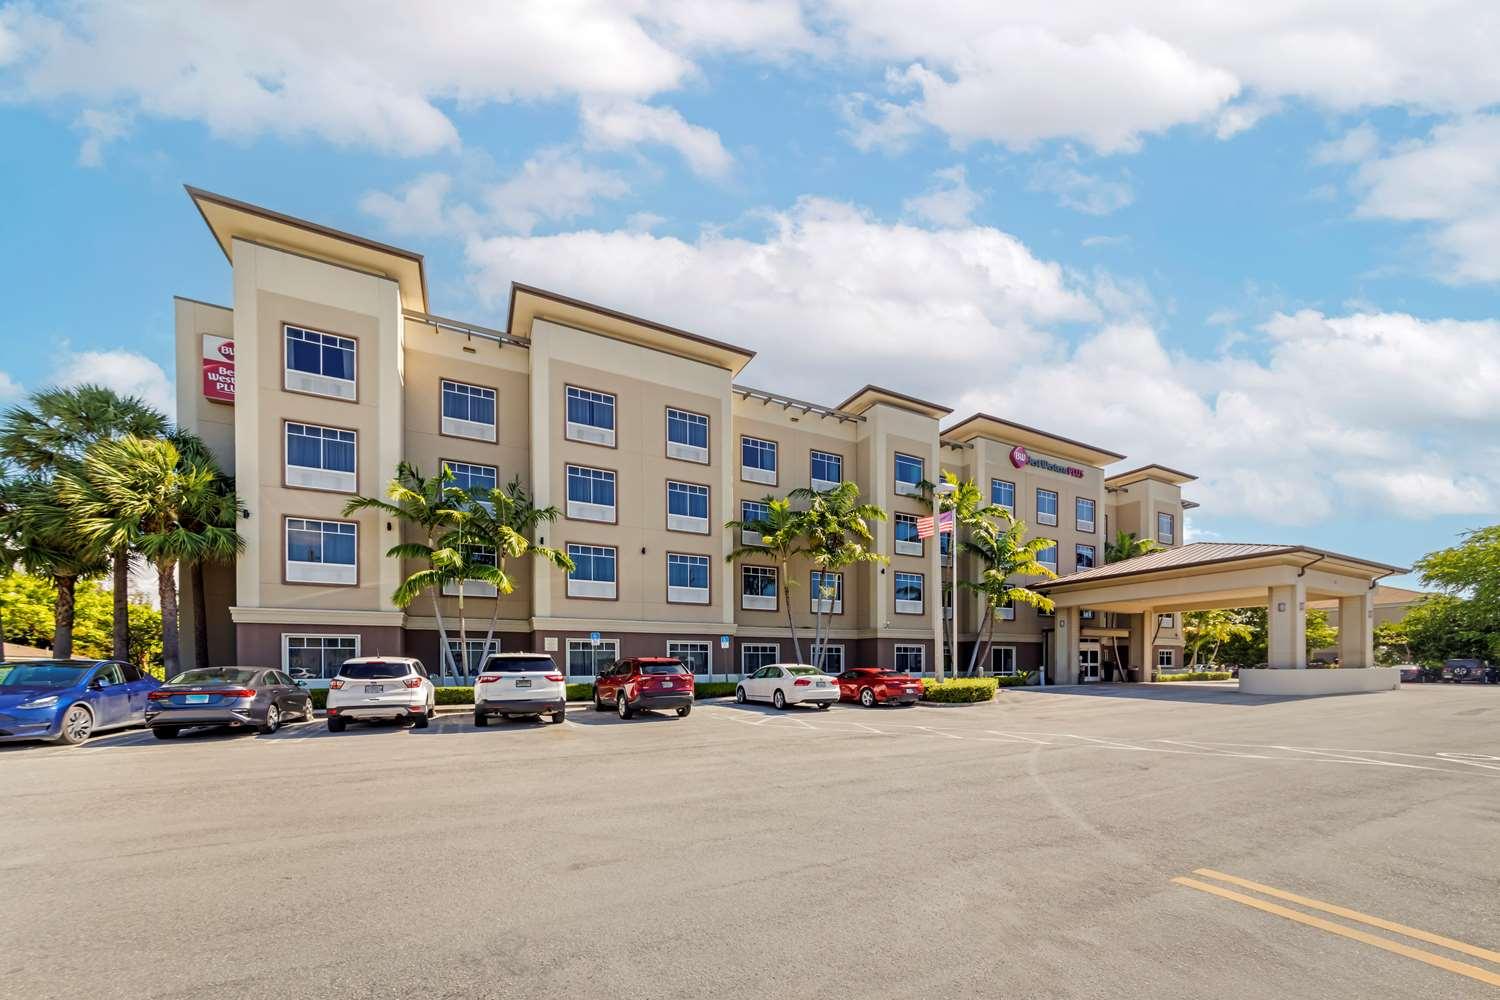 Best Western Plus Miami Airport North Hotel Suites in Miami Springs, FL